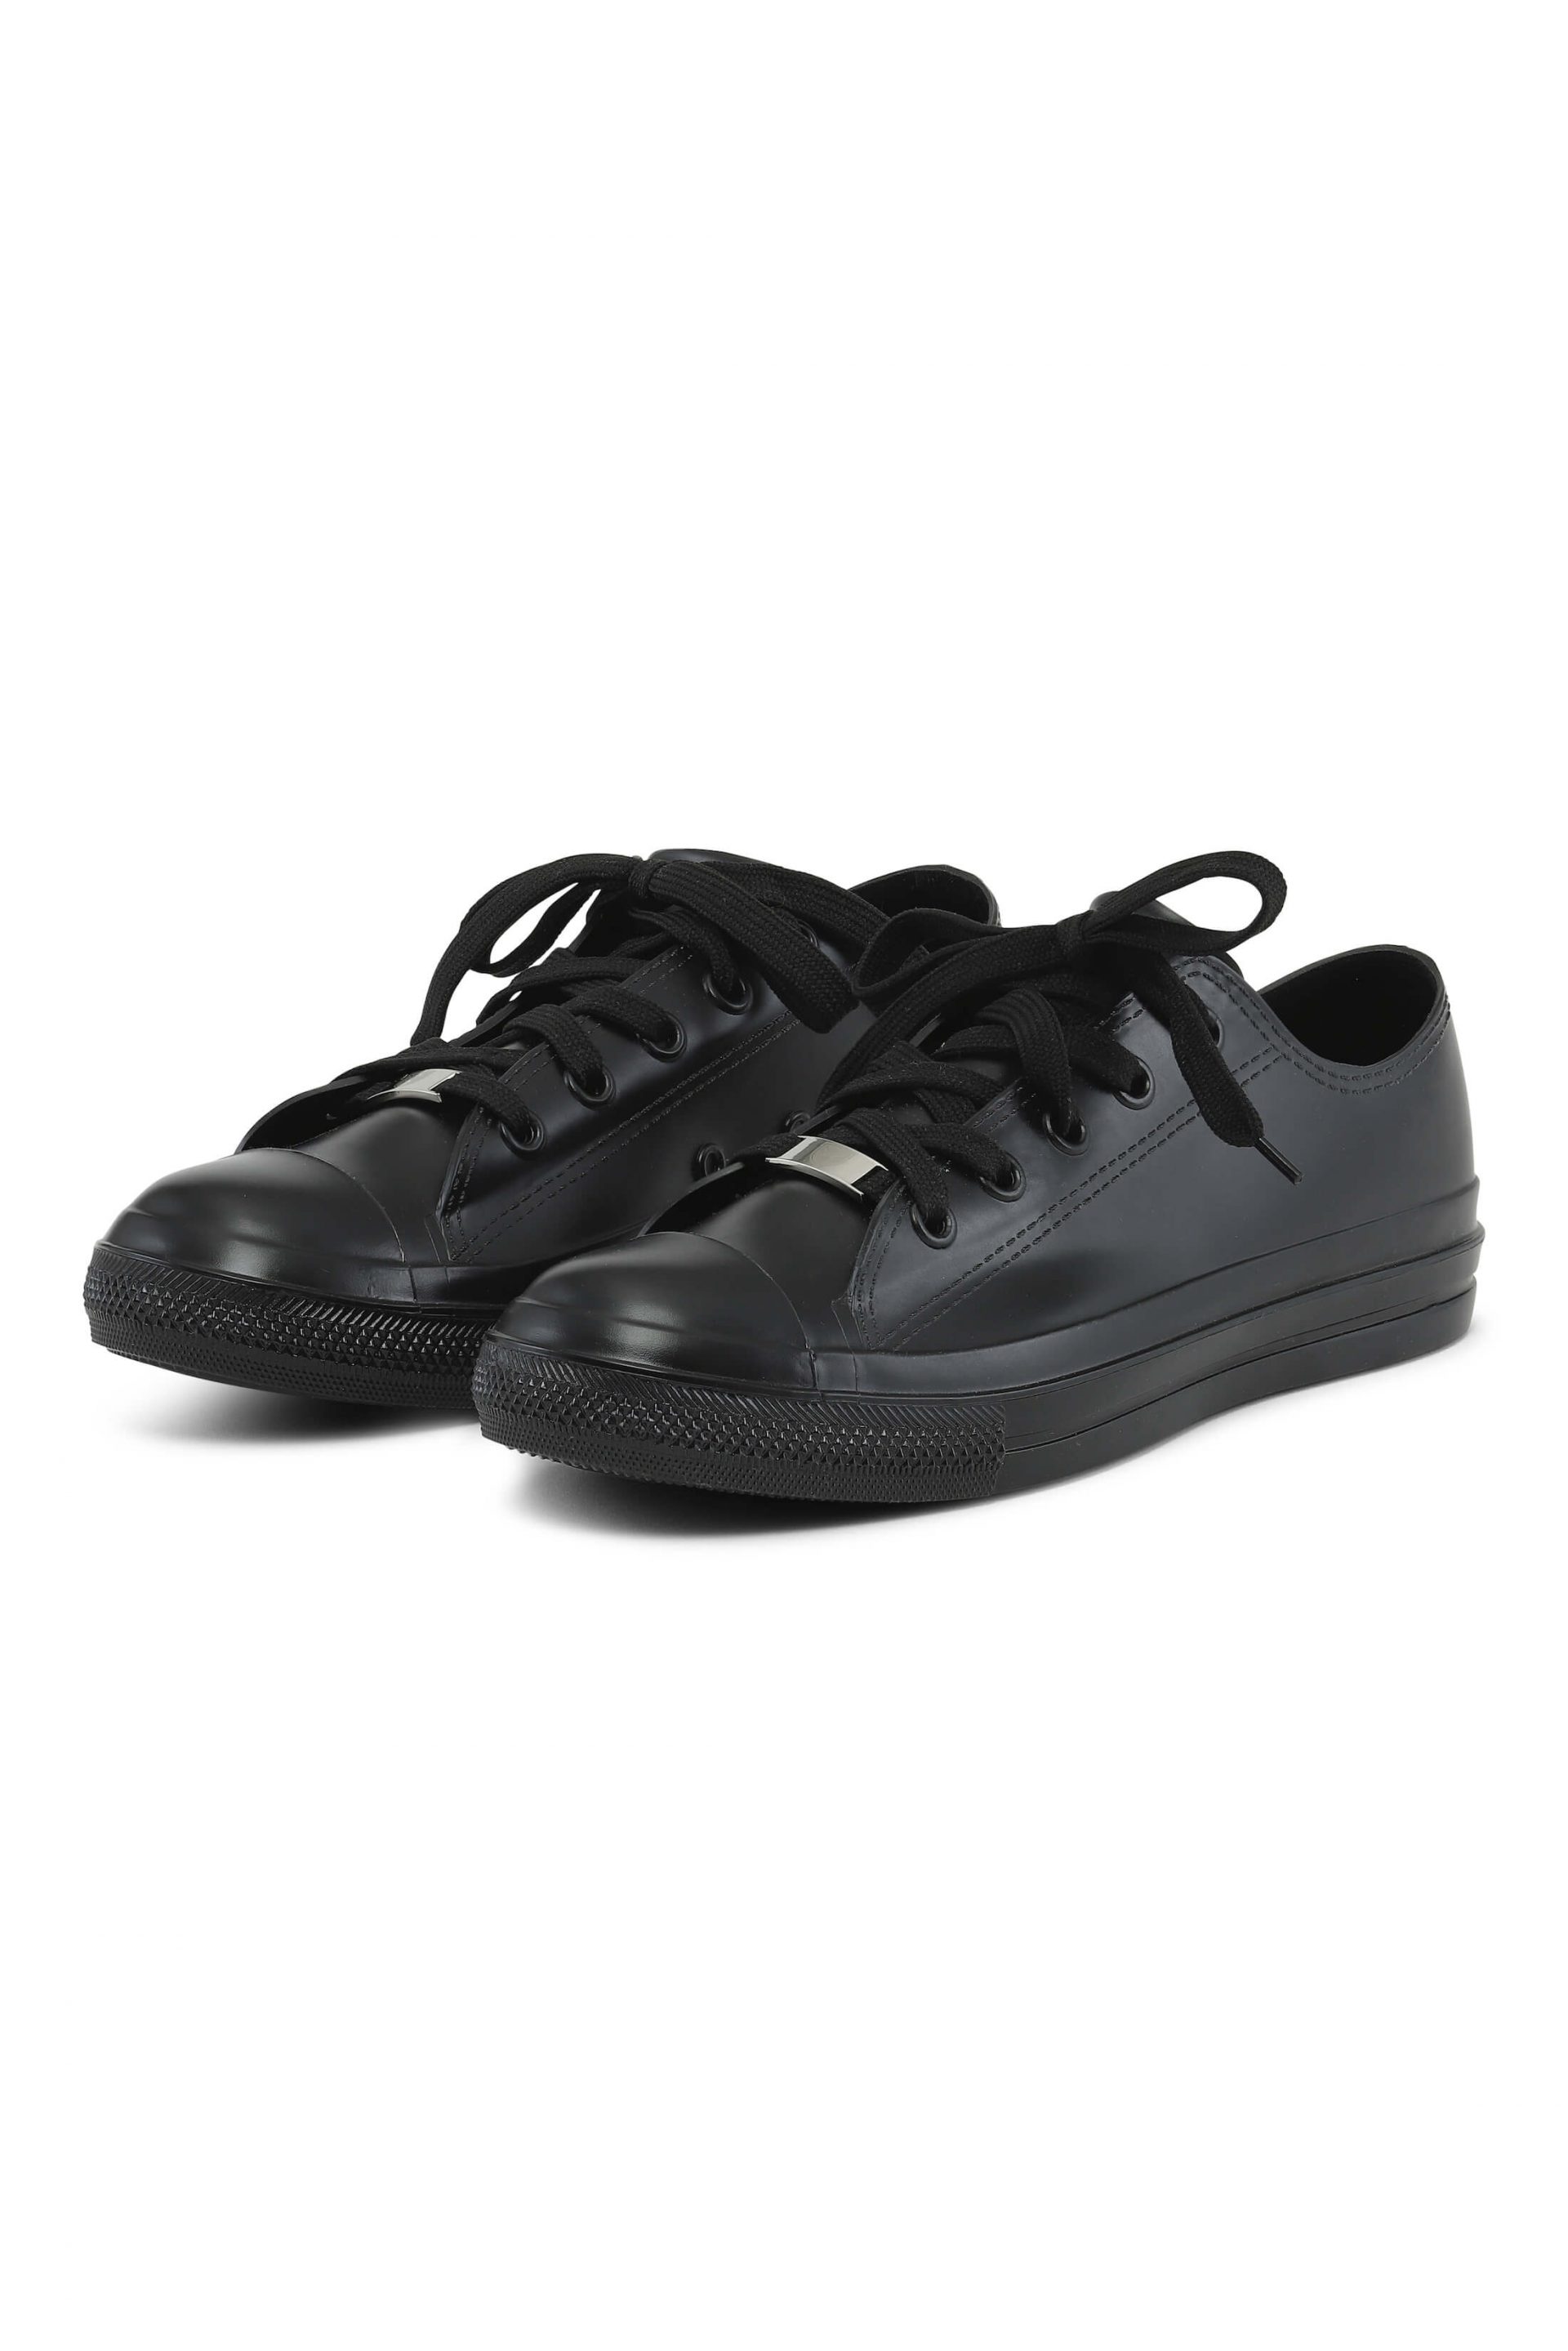 Black water-resistant sneakers